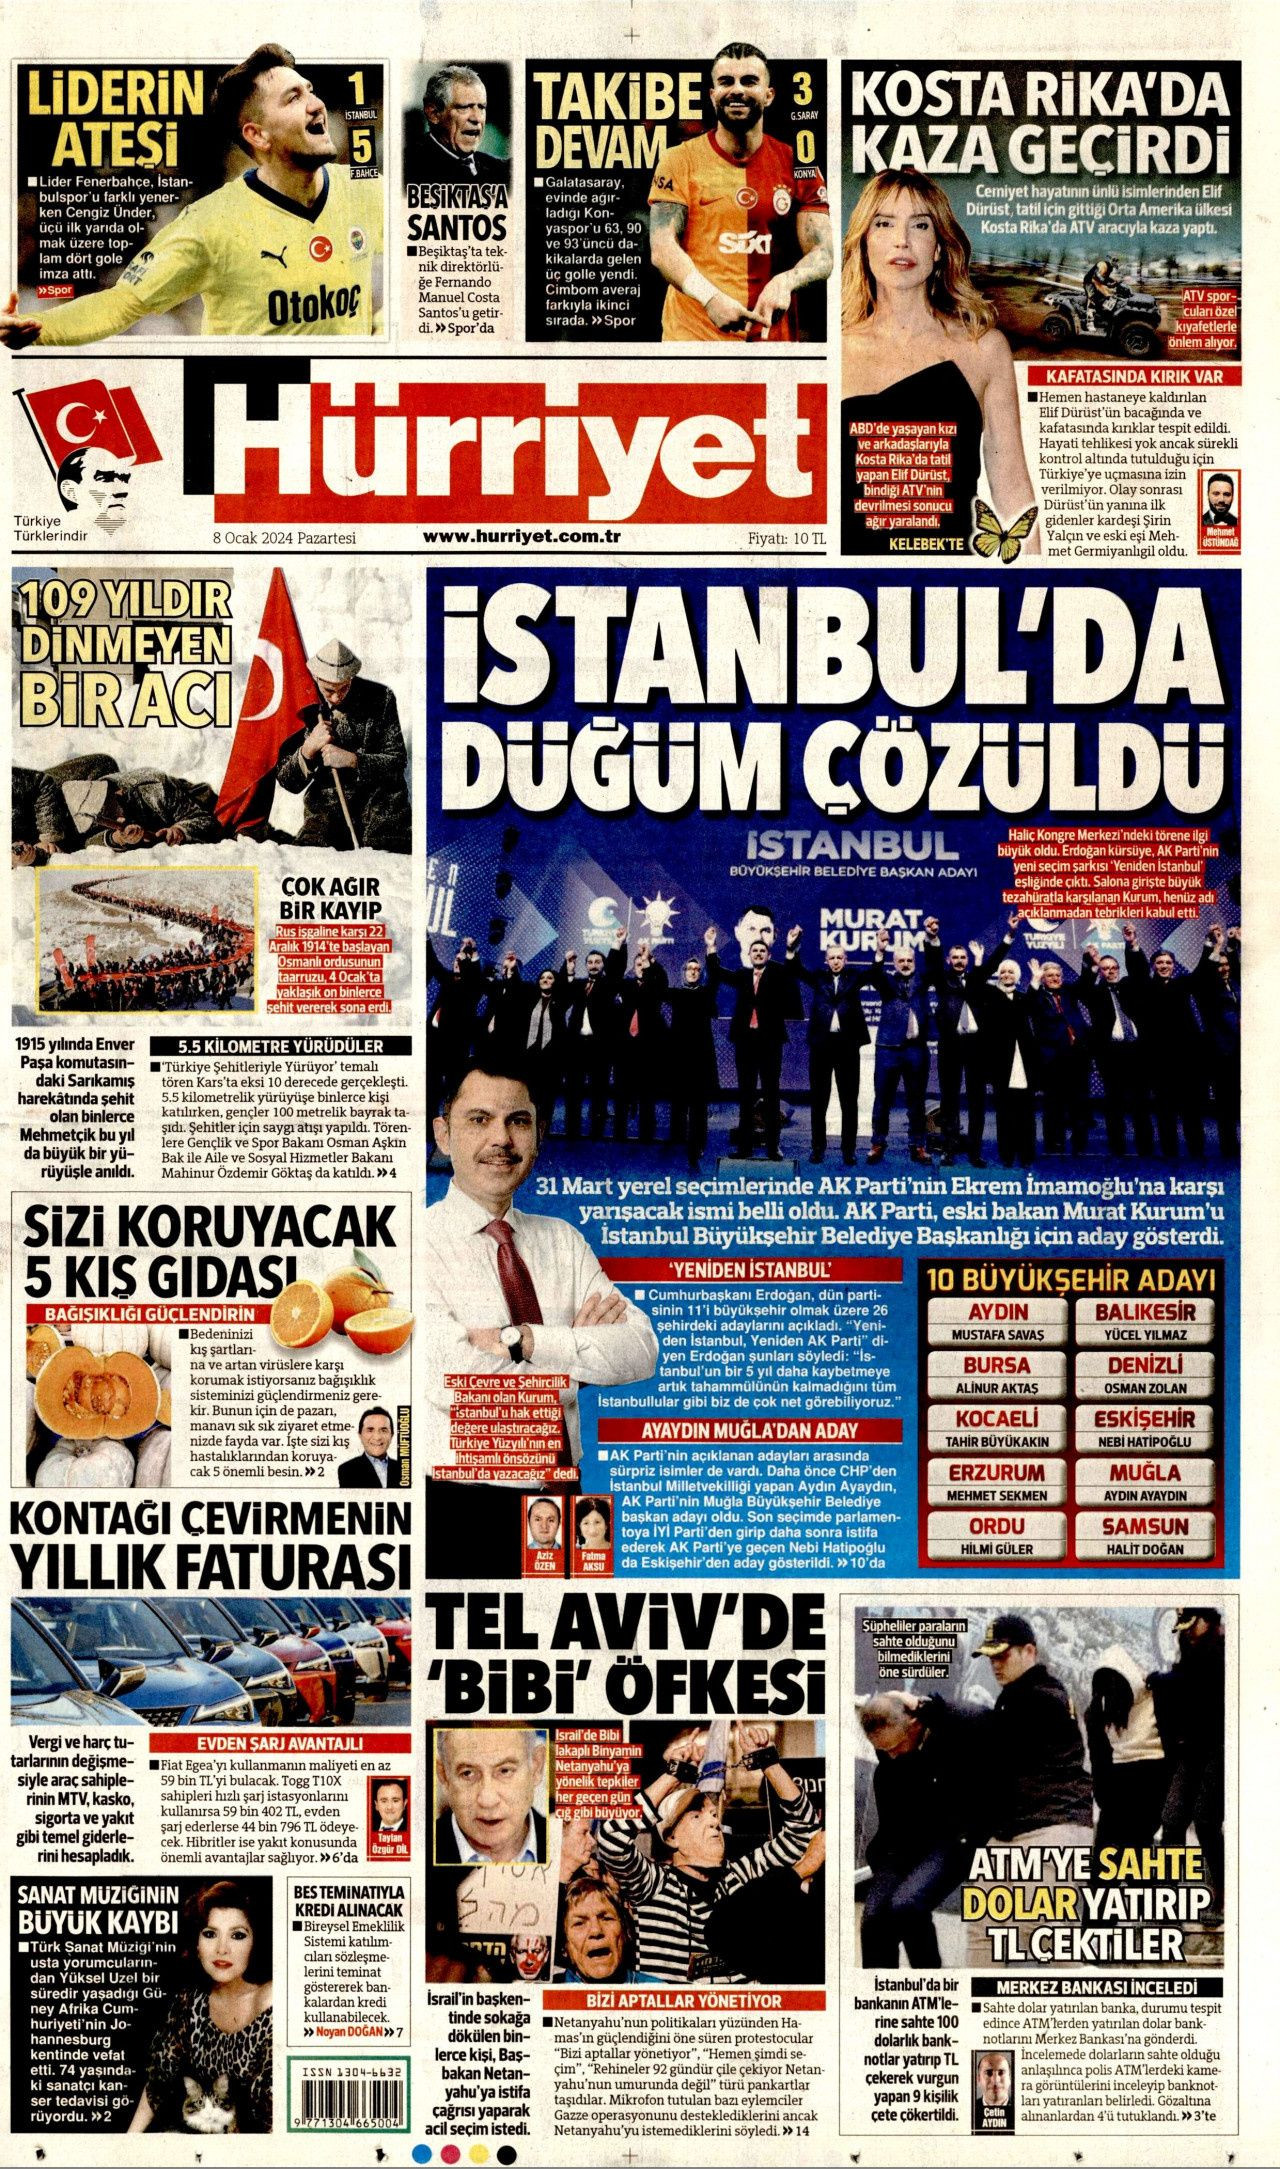 6 gazetede aynı manşet: Murat Kurum'un adaylığını kim, nasıl gördü? - Sayfa 1